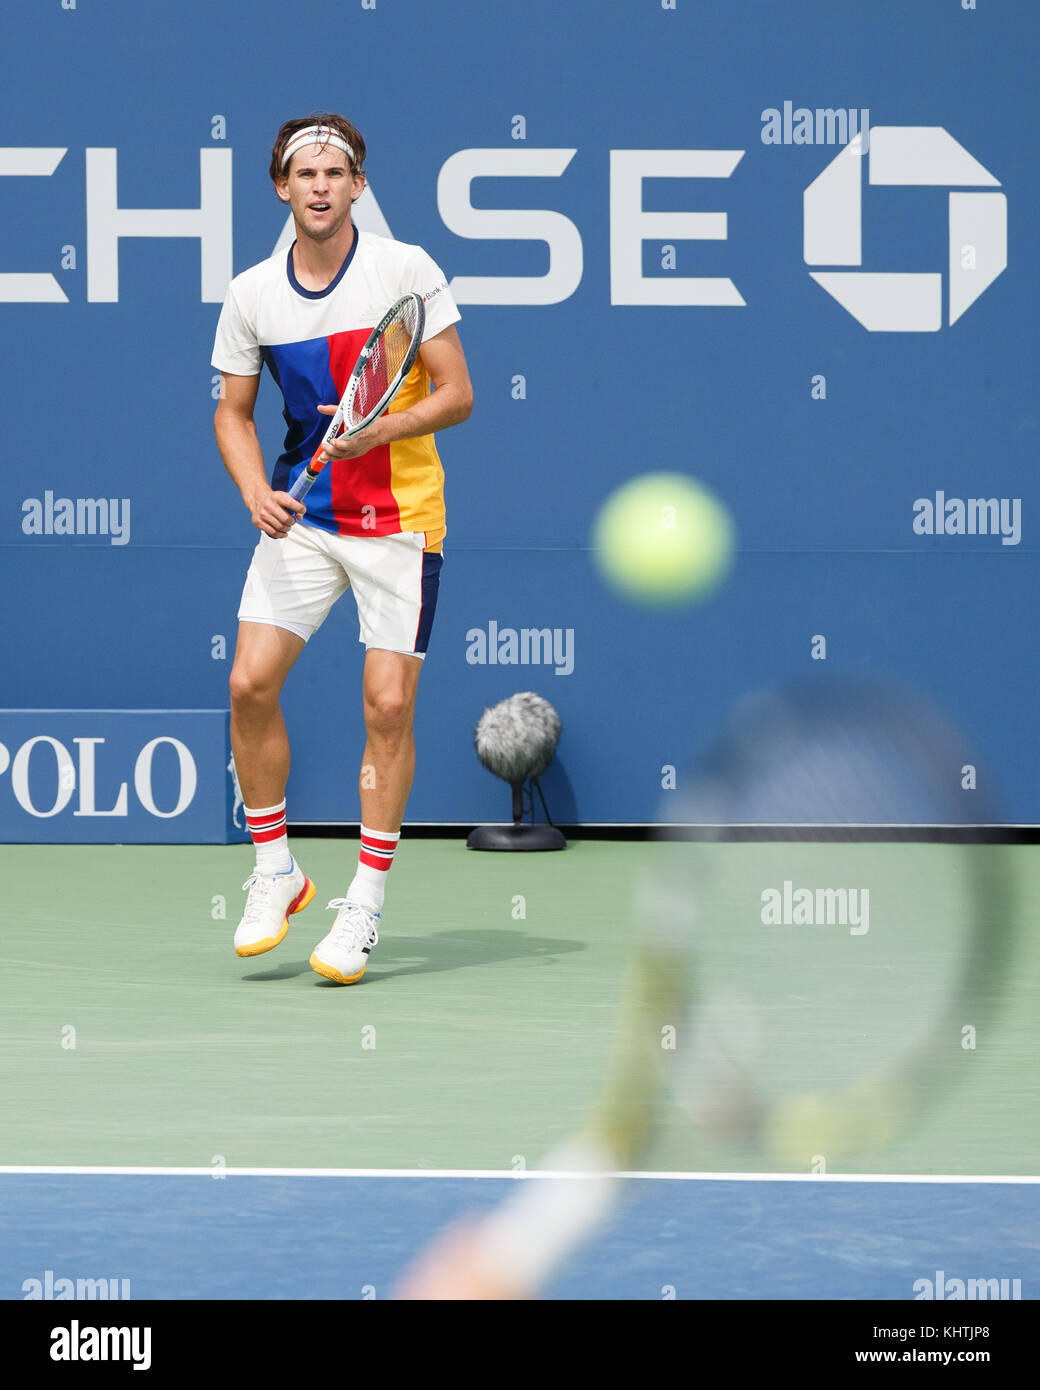 Austrian tennis player Dominic thiem (Aut) für wartende servieren bei US Open Tennis Championship 2017, New York City, New York, United States. Stockfoto